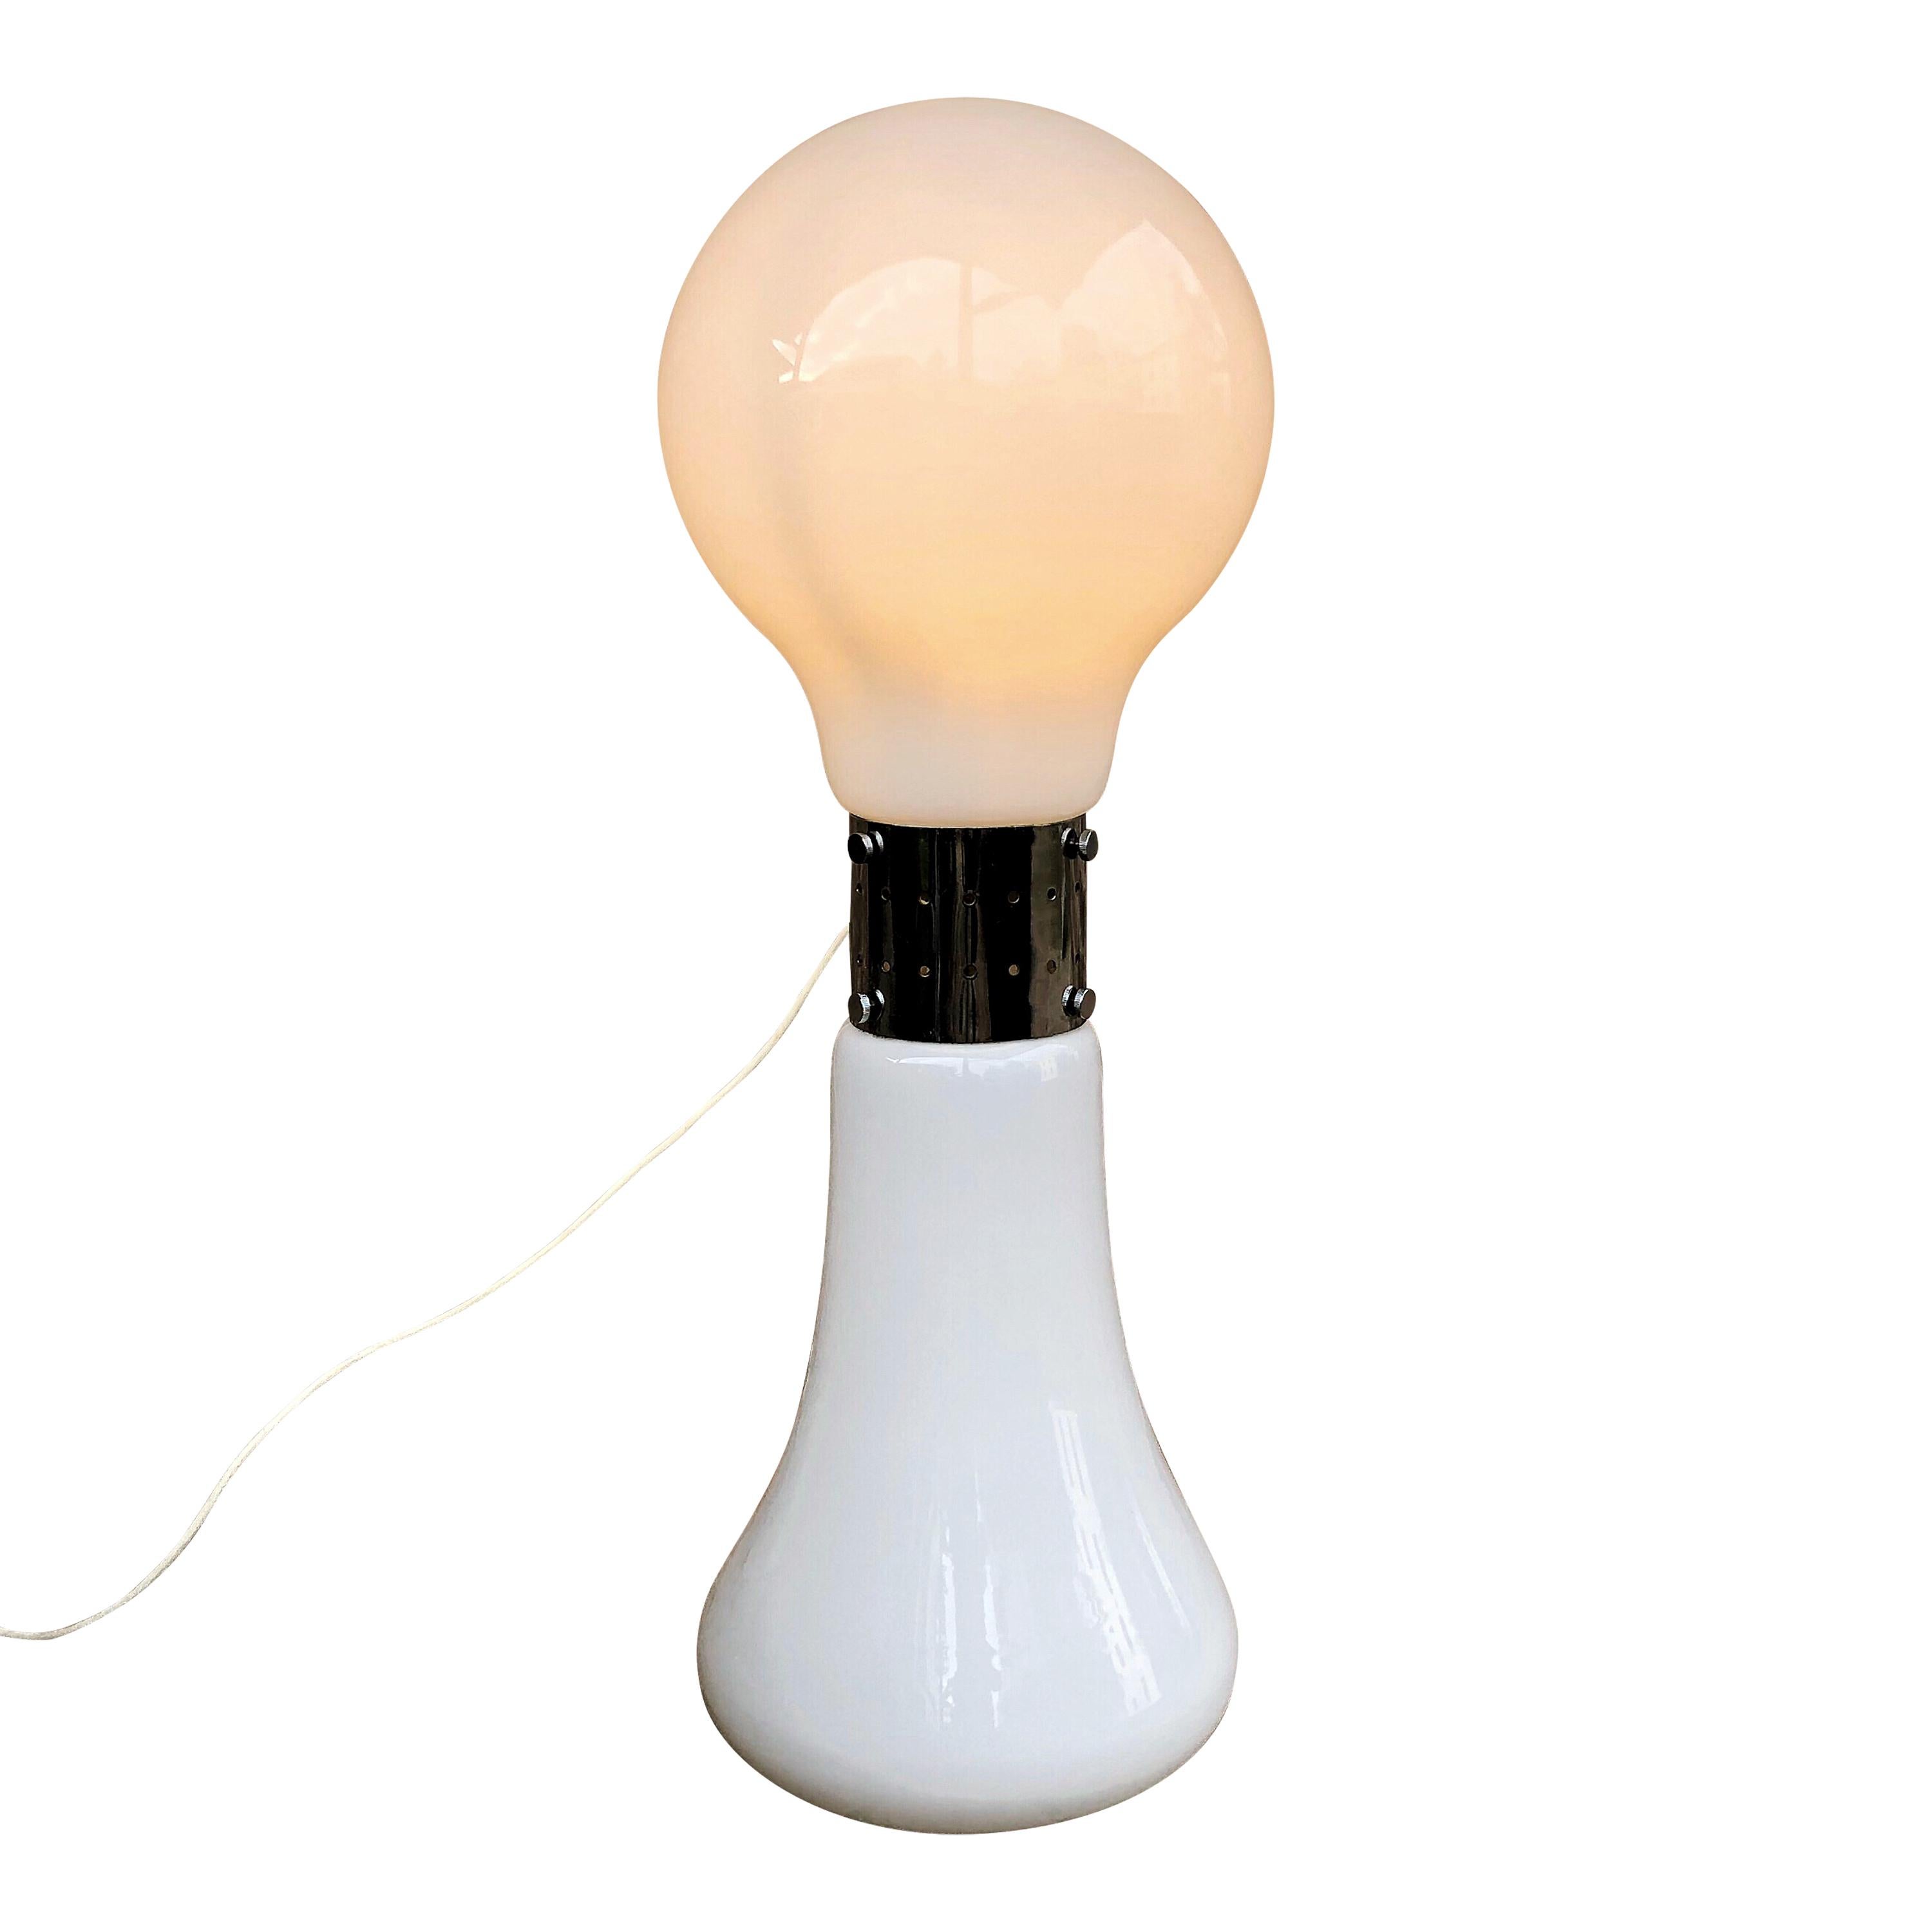 
Designé par Carlo Nason et produit par le fabricant italien Vetreria Mazzega Murano dans les années 1960, ce lampadaire est le choix idéal pour éclairer votre salon de l'ère spatiale.
Structure opaline en verre de Murano et chrome qui rappelle une